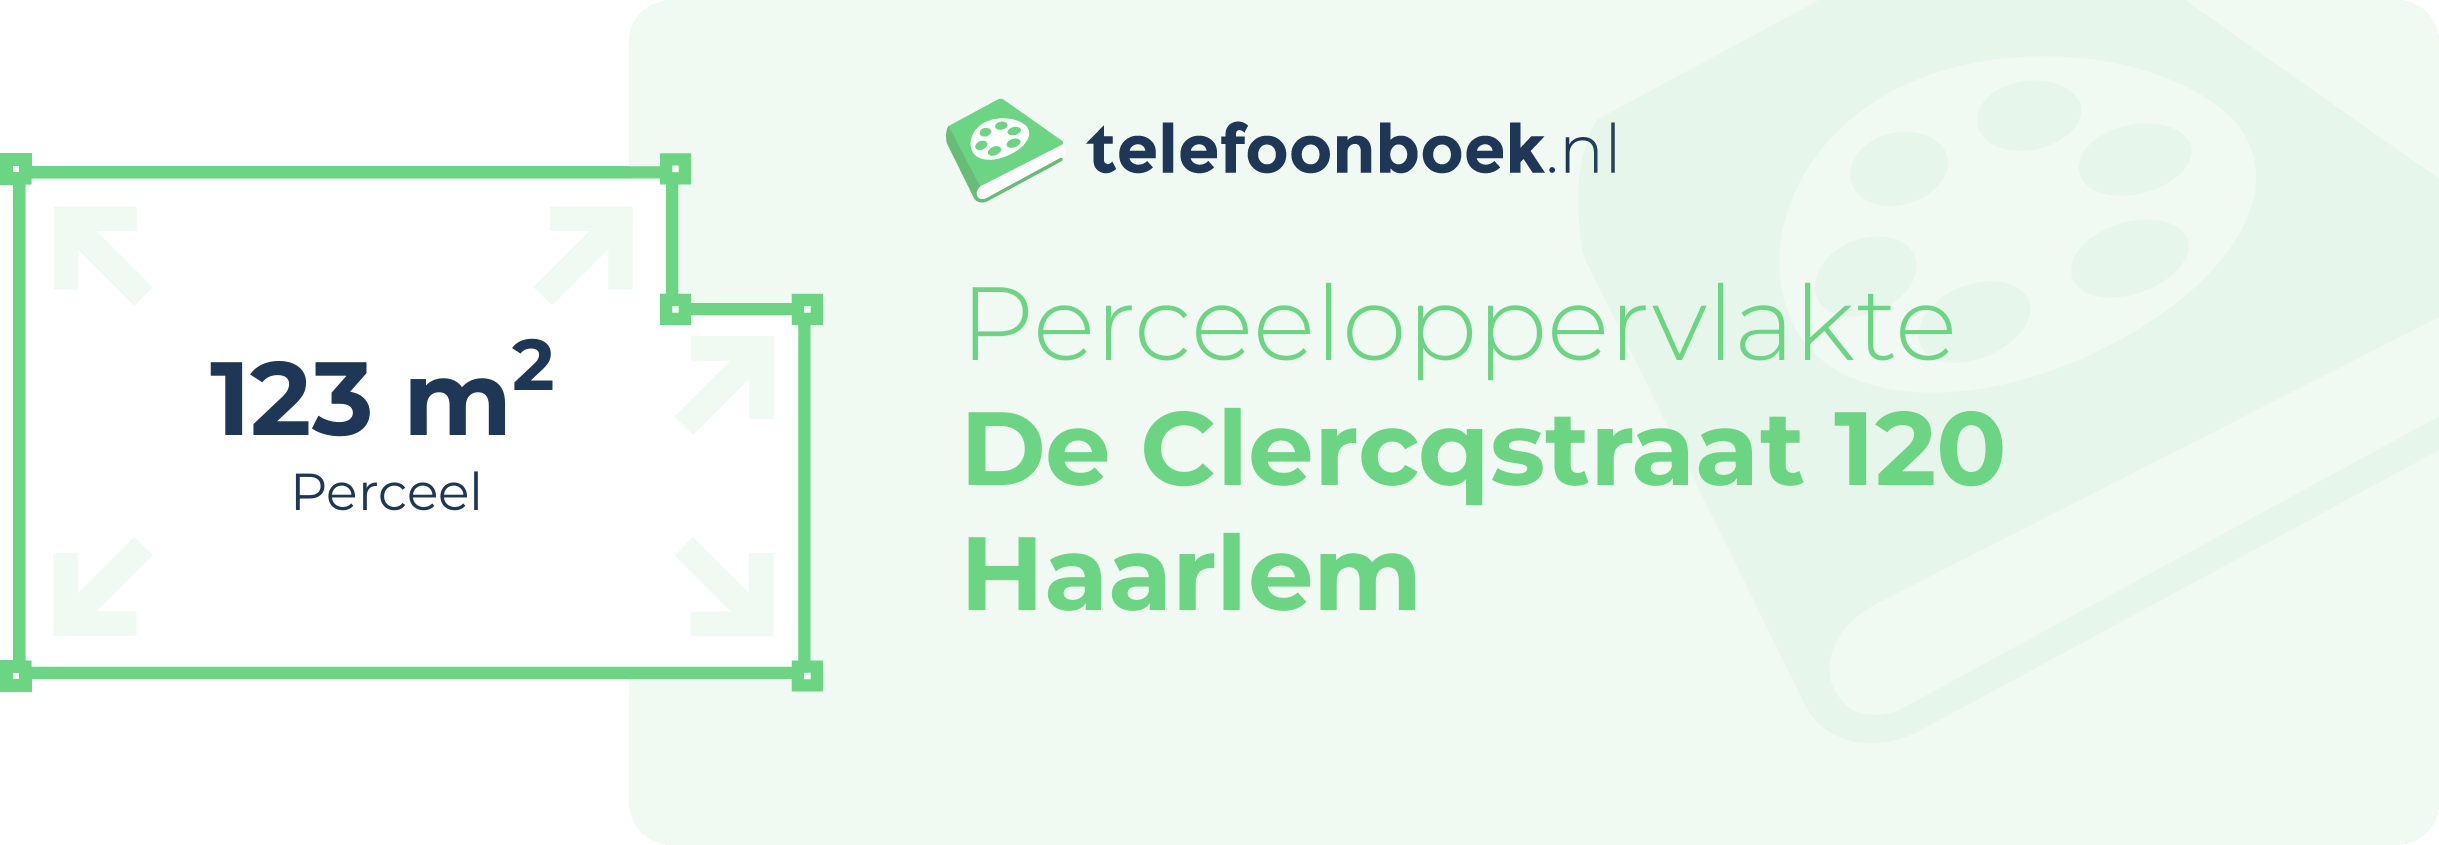 Perceeloppervlakte De Clercqstraat 120 Haarlem